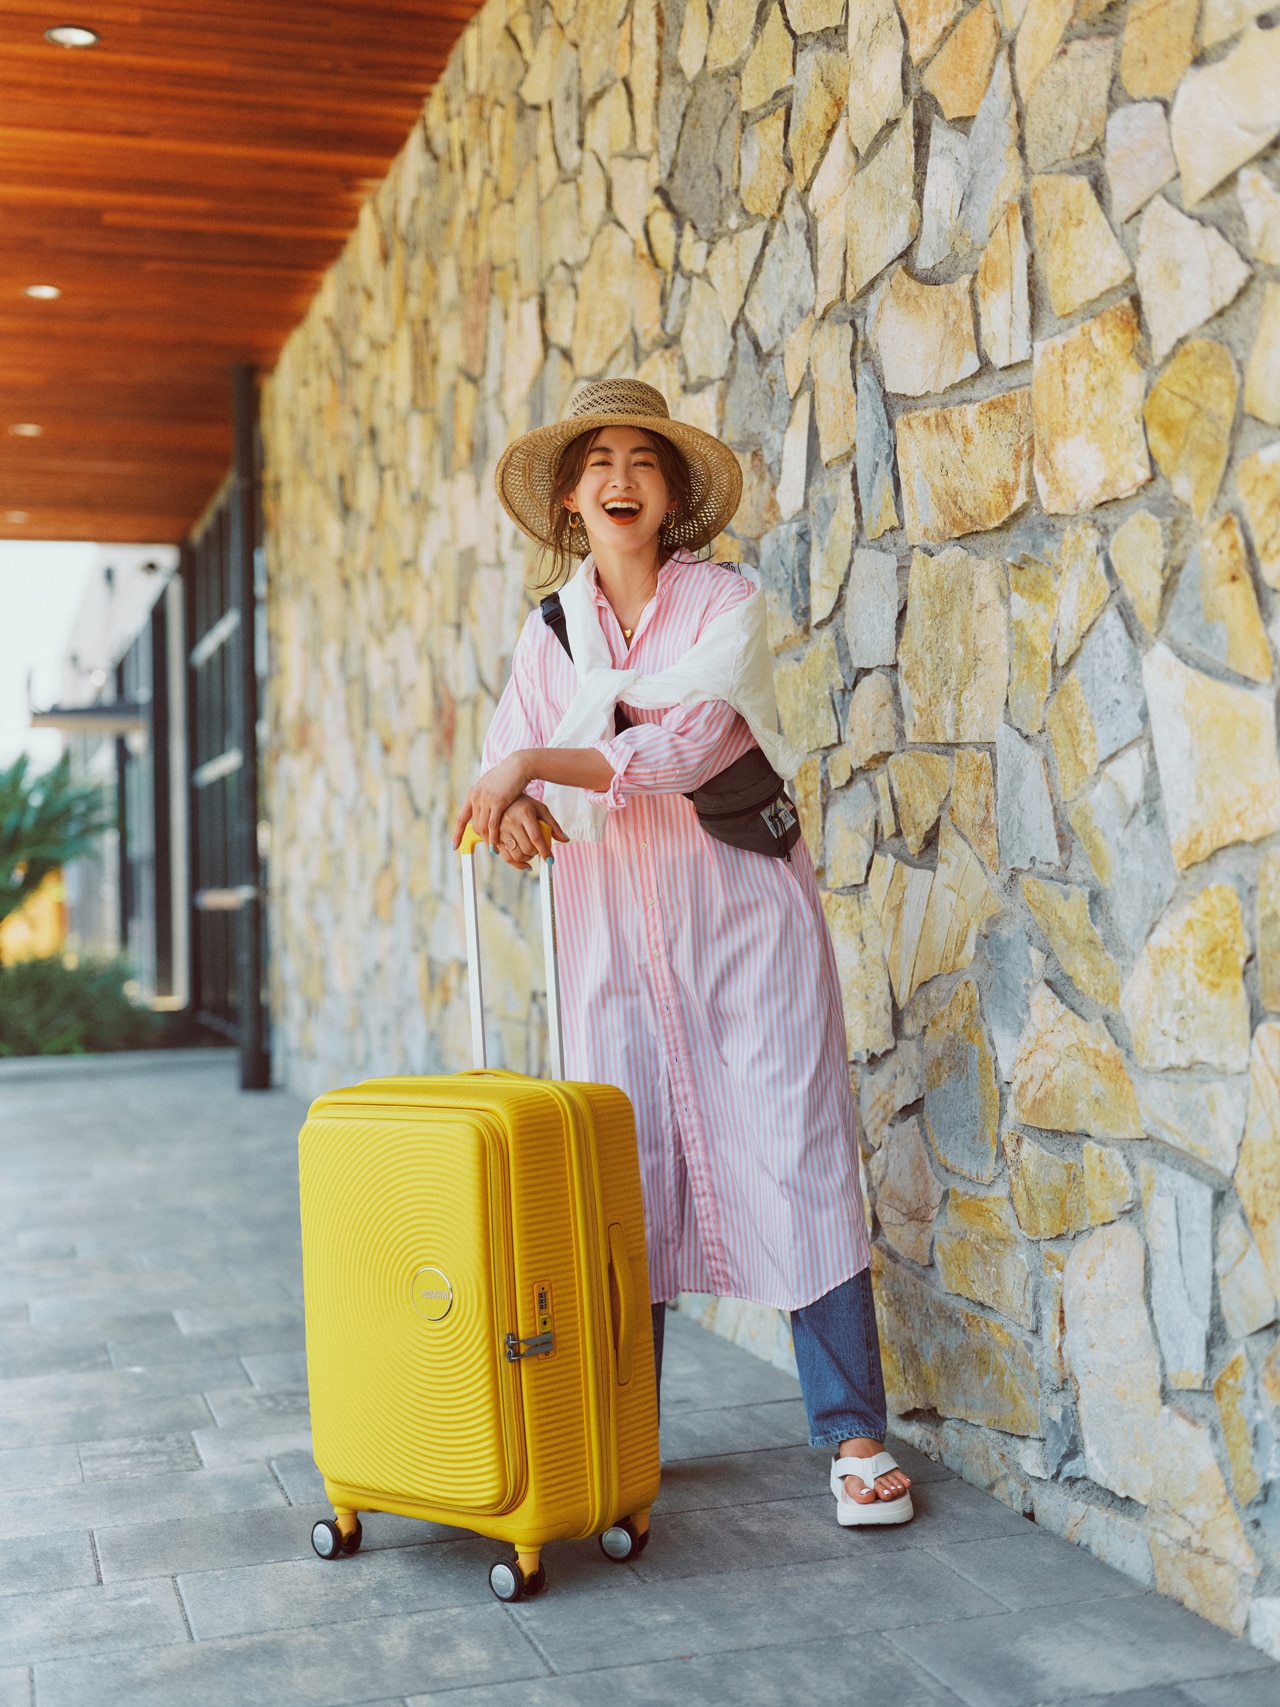 モデル高垣麗子さん、アメリカンツーリスター「キュリオ スピナー ブックオープニング」のスーツケース